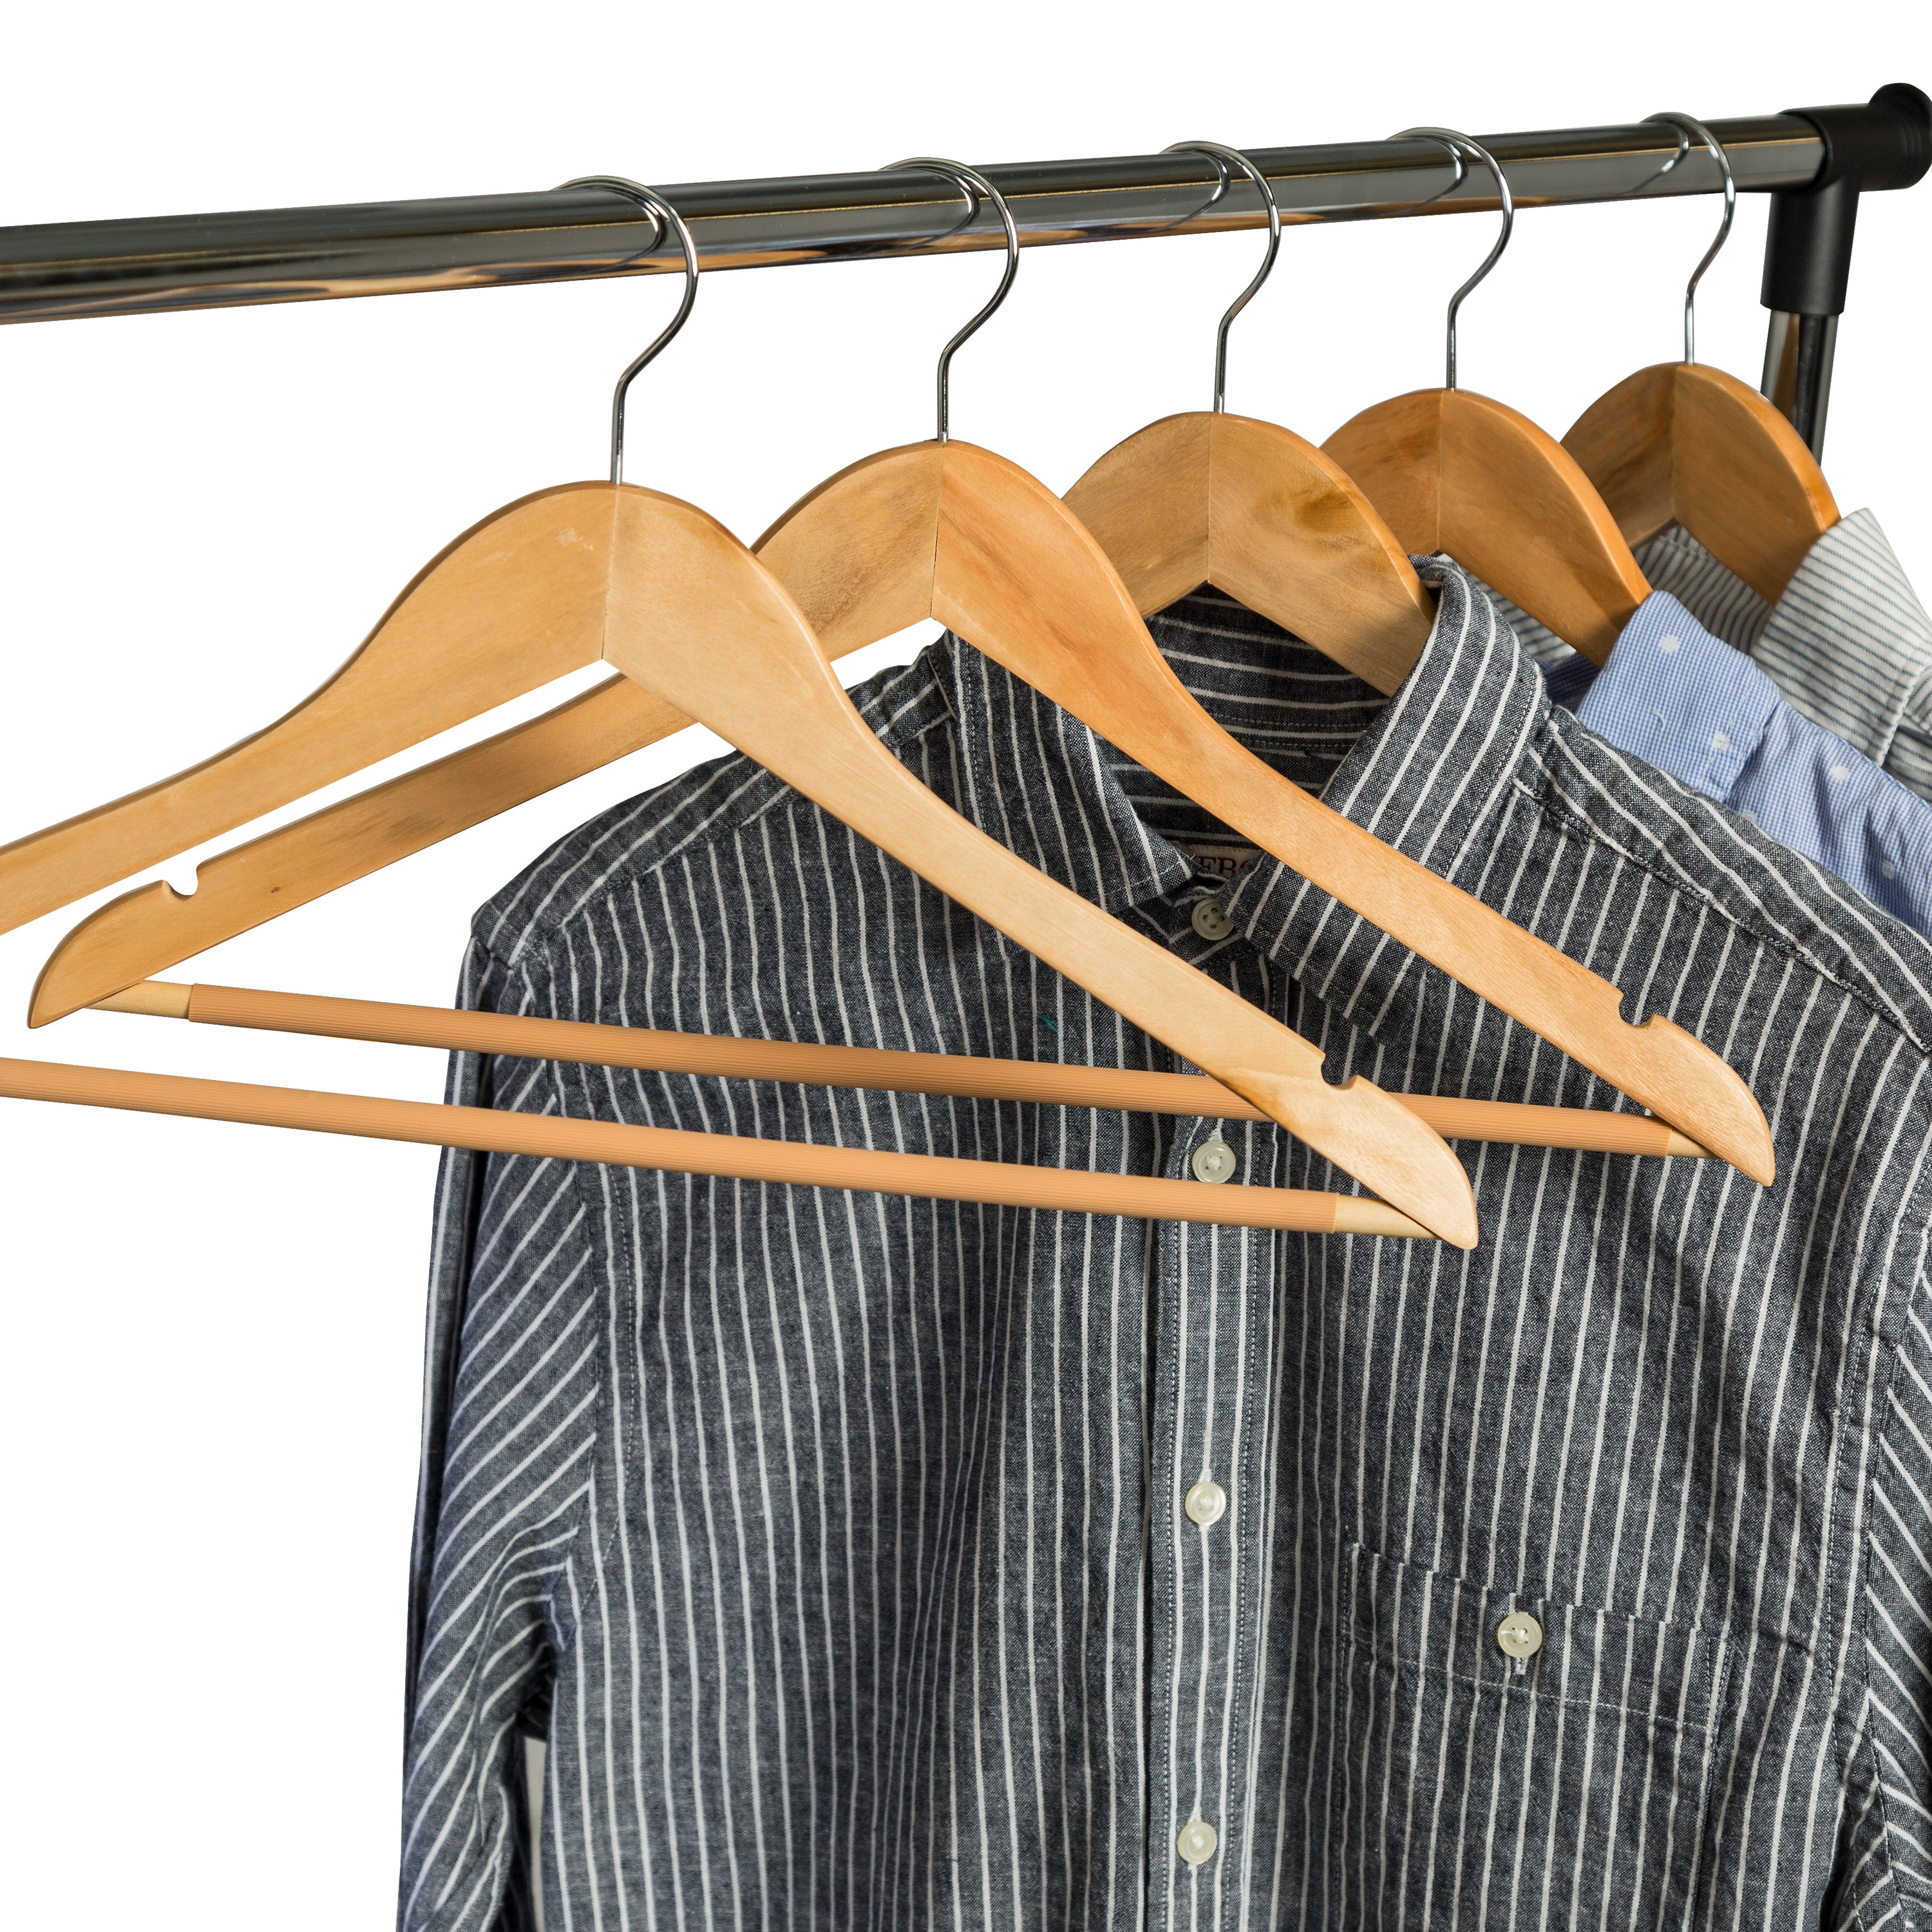 Velvet Clothes Hangers (20, 40, 60, 100 Packs) Heavy Duty Durable Coat and  Clothes Hangers, Vibrant Color Hangers